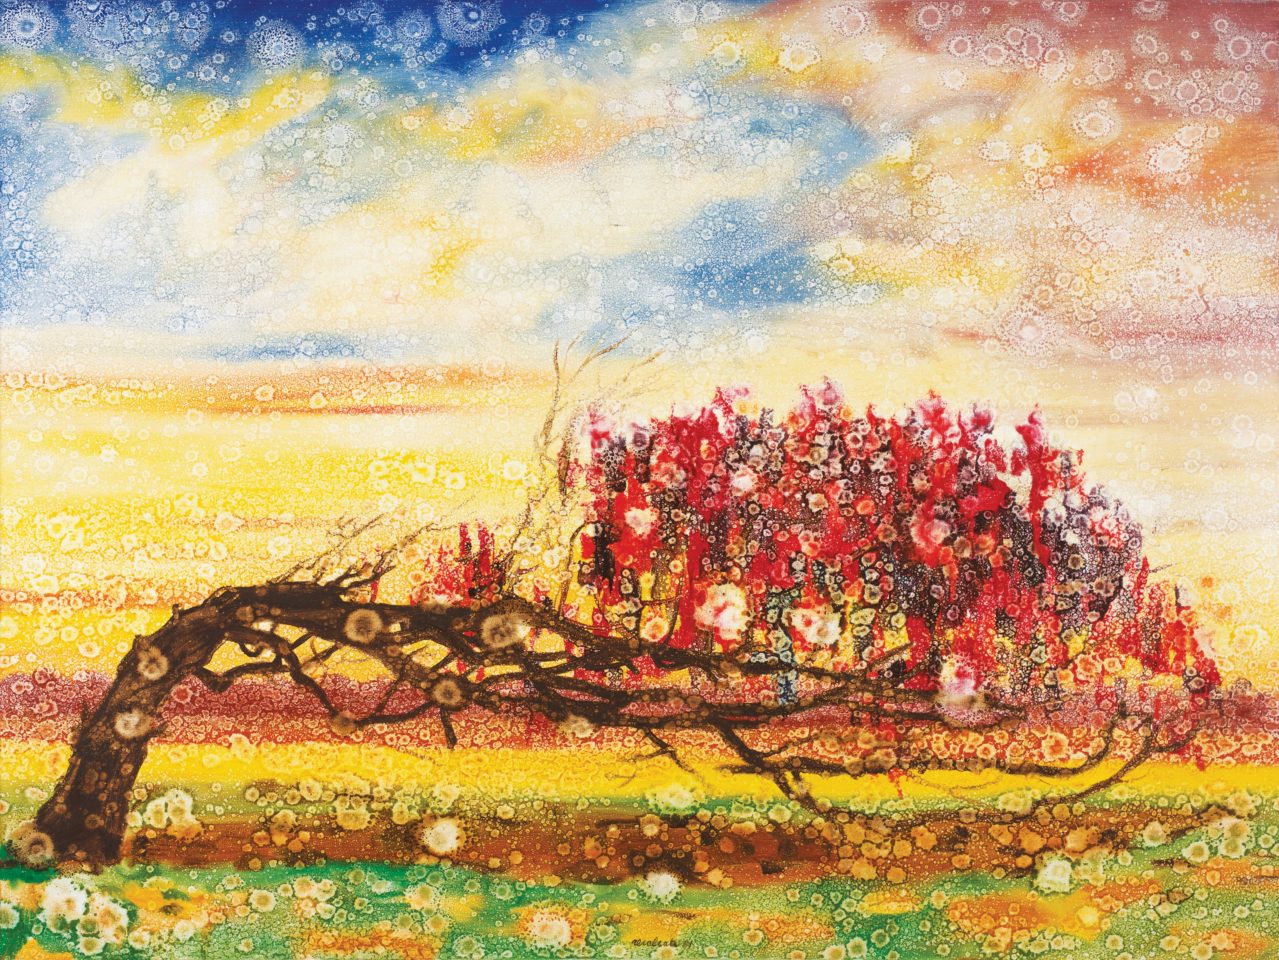 Antonio Recalcati, Les quatre saisons- Automne, huile sur toile, 1981, 150 x 200 cm